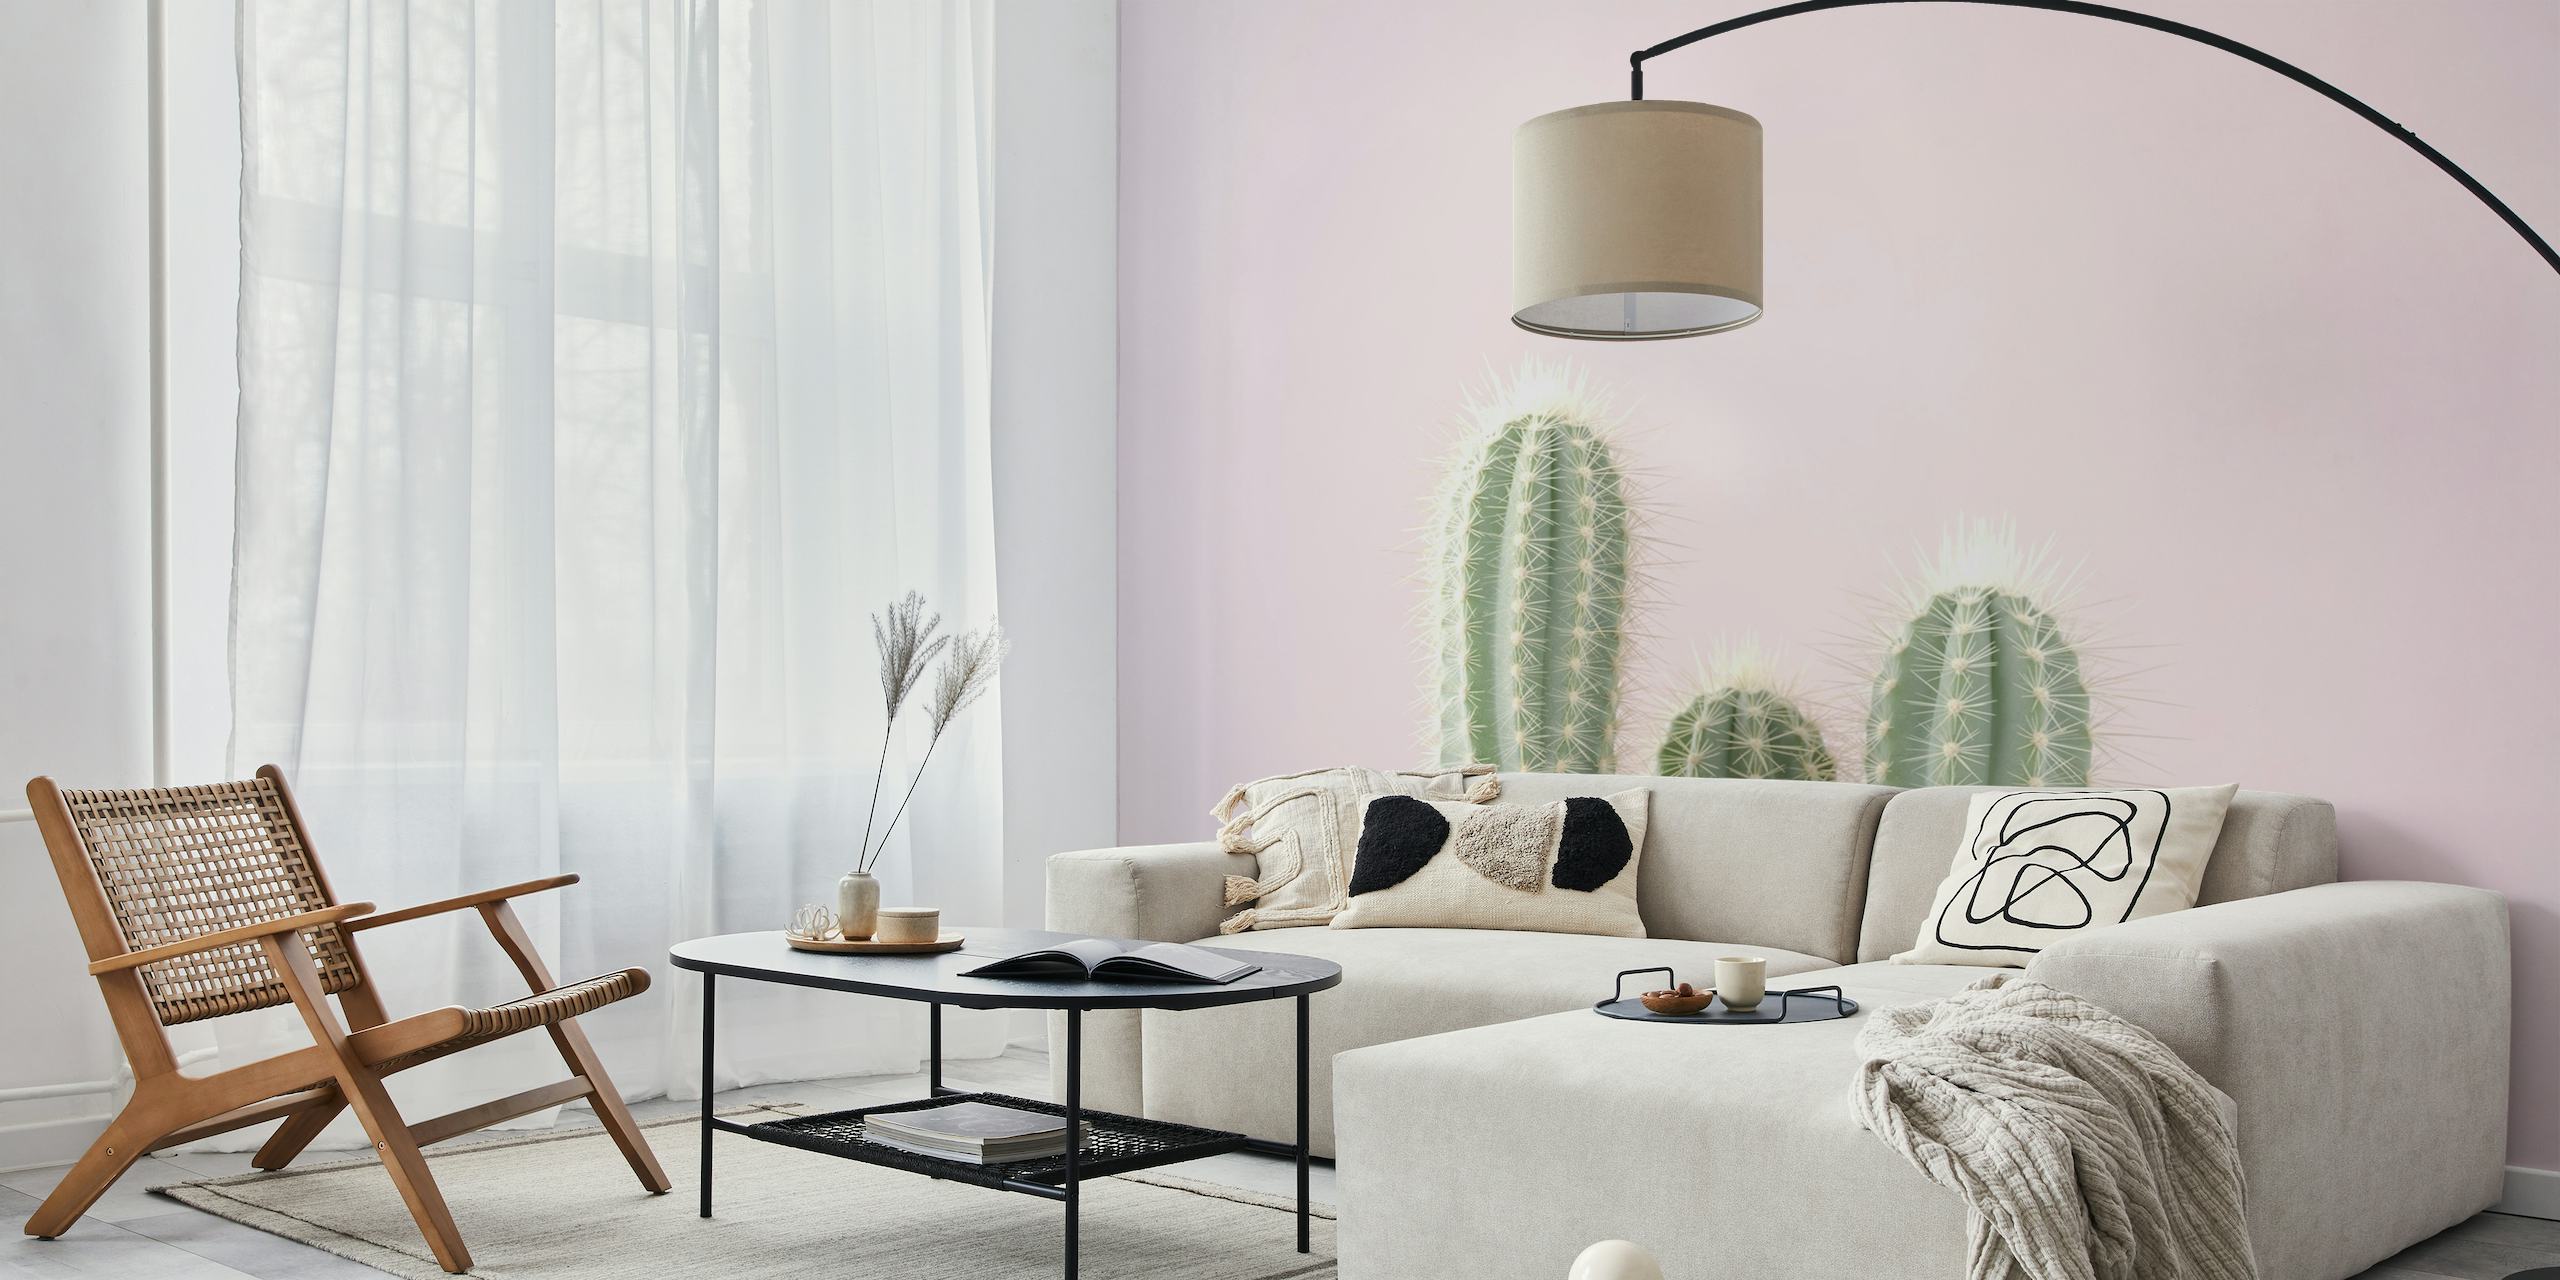 Cactus fotobehang in pastelkleuren die veerkracht en schoonheid uitstralen